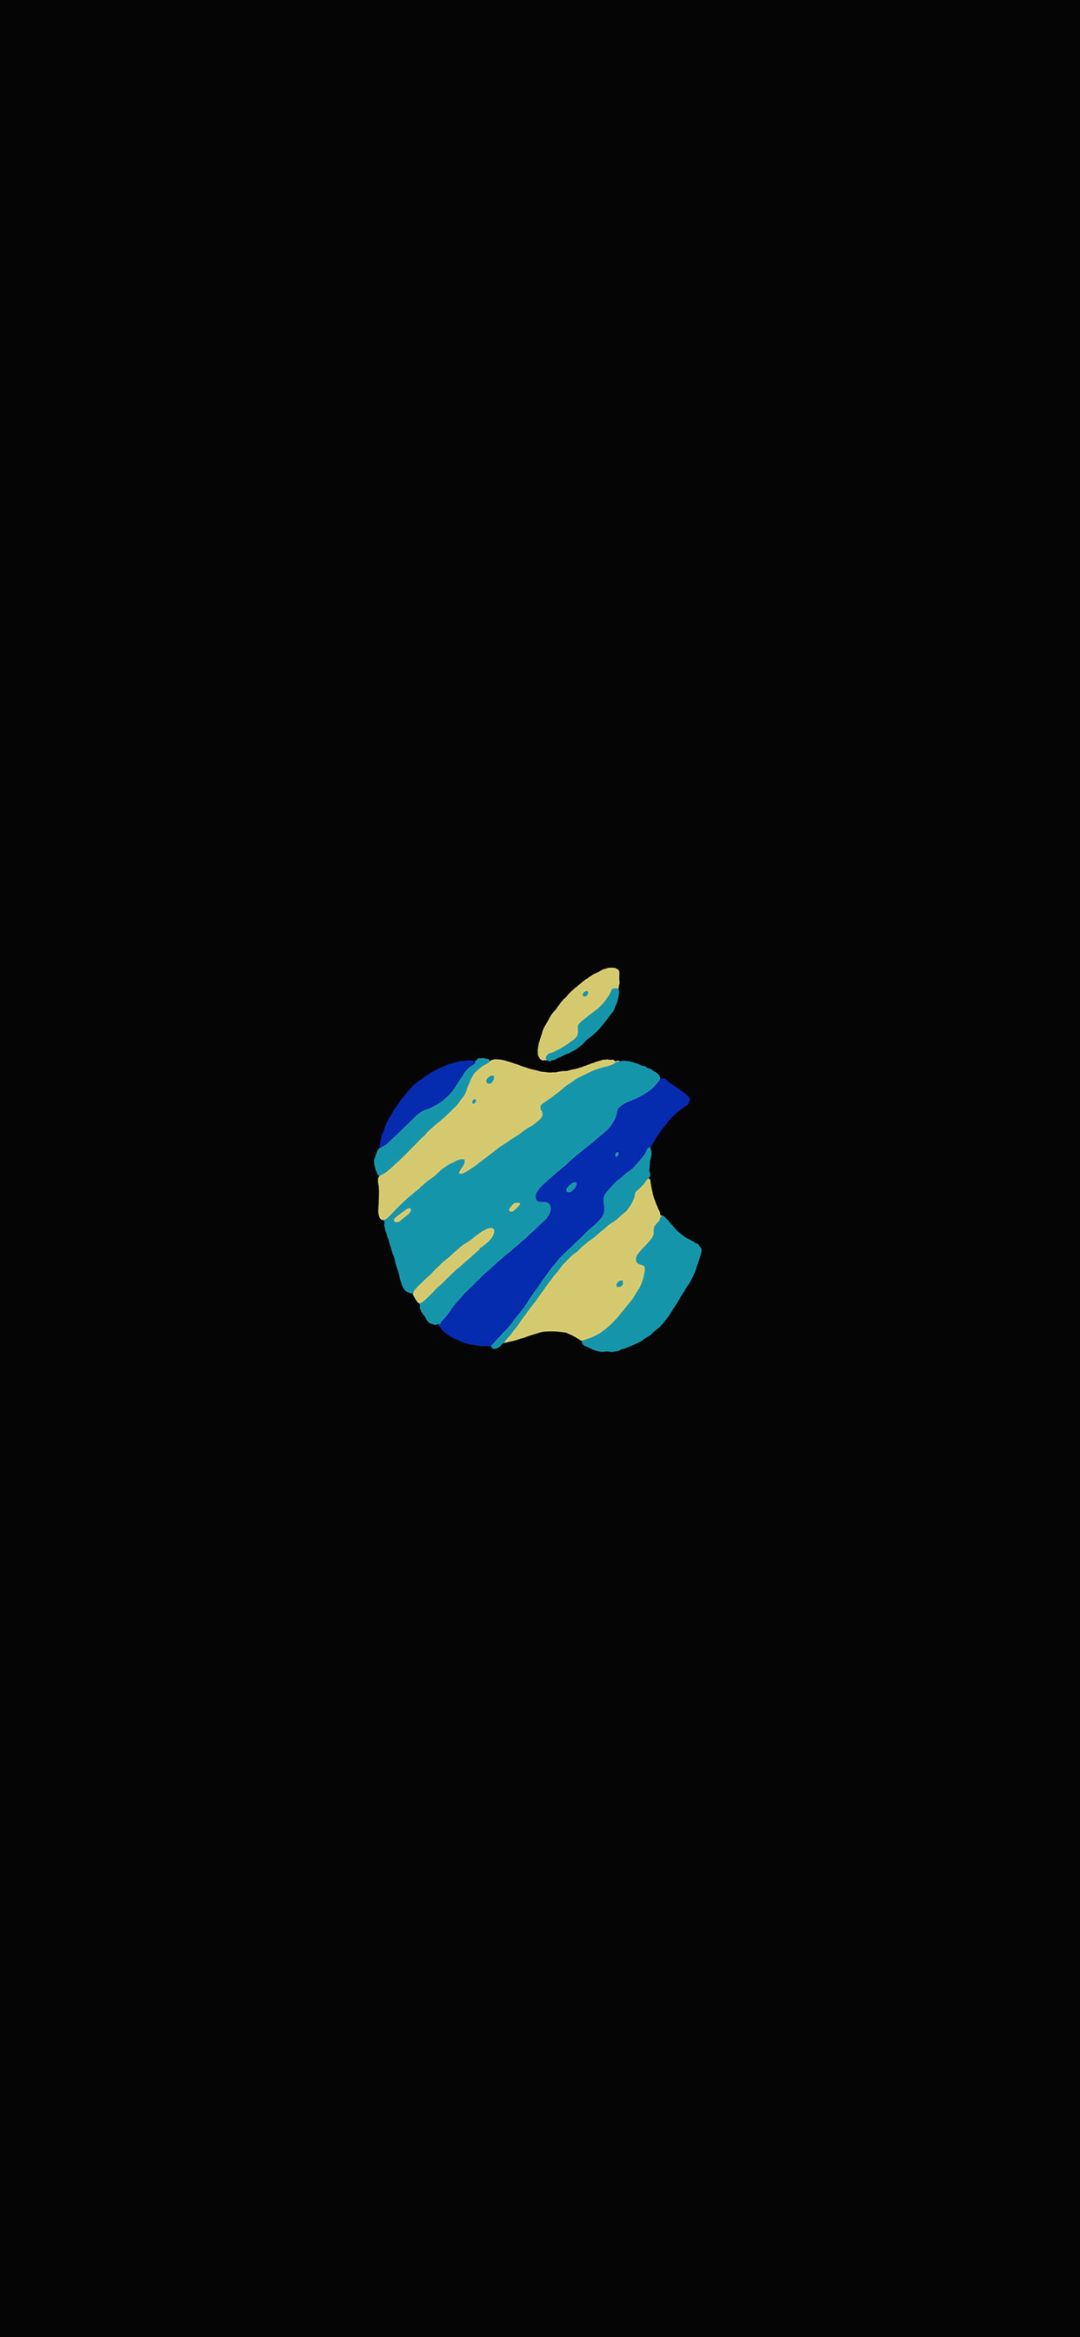 黑色背景的苹果邀请函logo壁纸